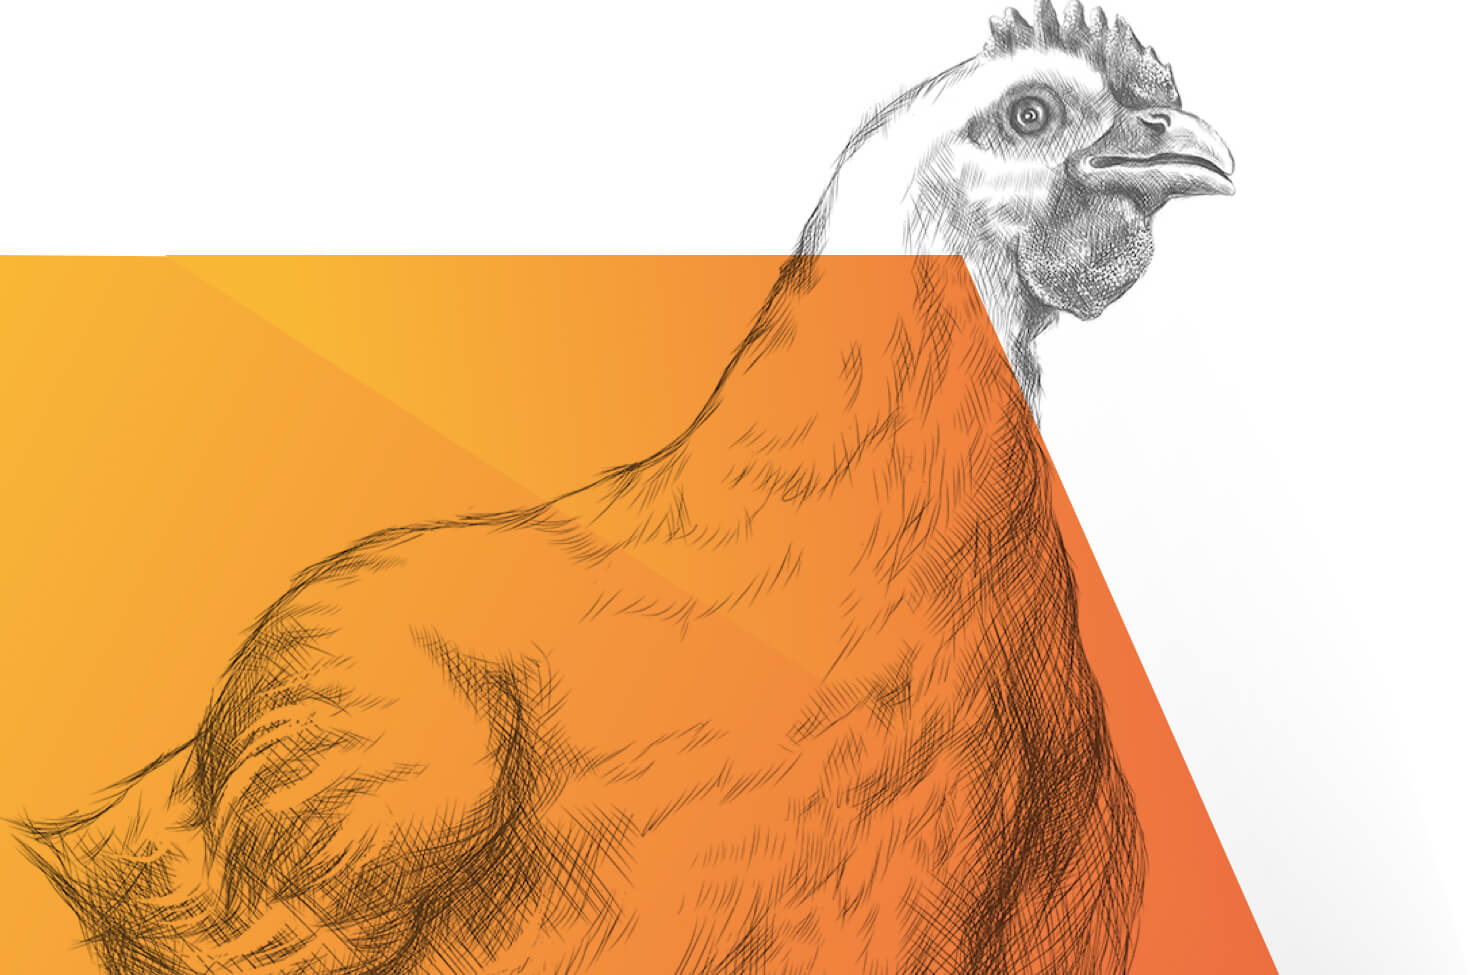 Ein schwarz-weiß gezeichnetes Huhn, das im Vordergrund teilweise mit einer orangenen, halbtransparenten Farbfläche bedeckt ist.